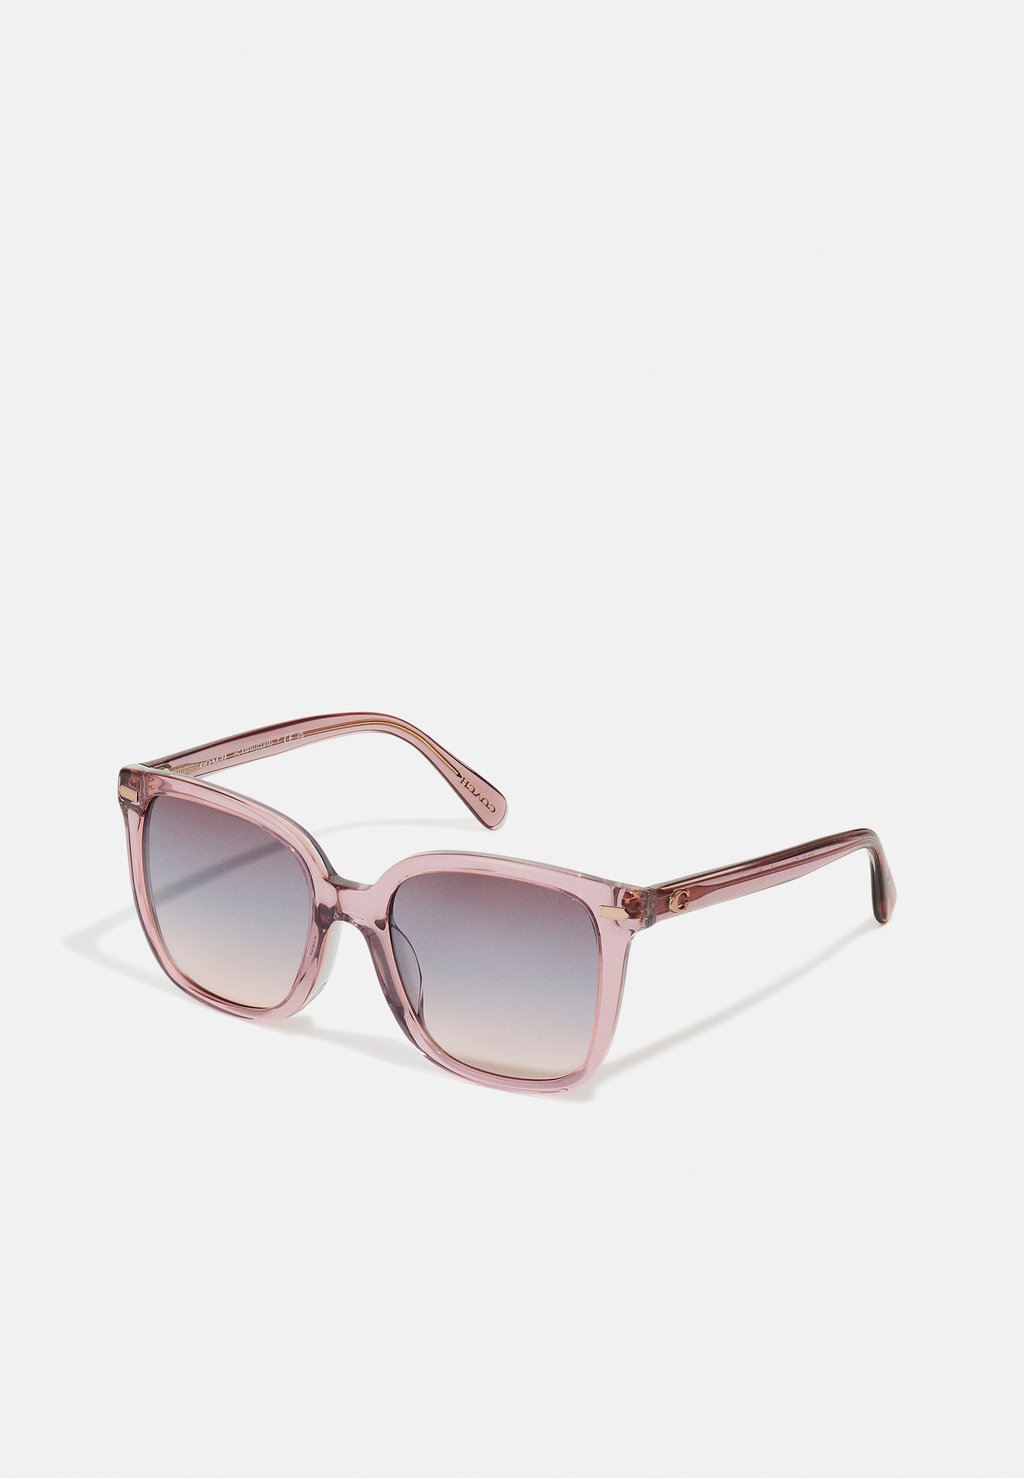 Солнцезащитные очки Coach, цвет transparent rose/blush